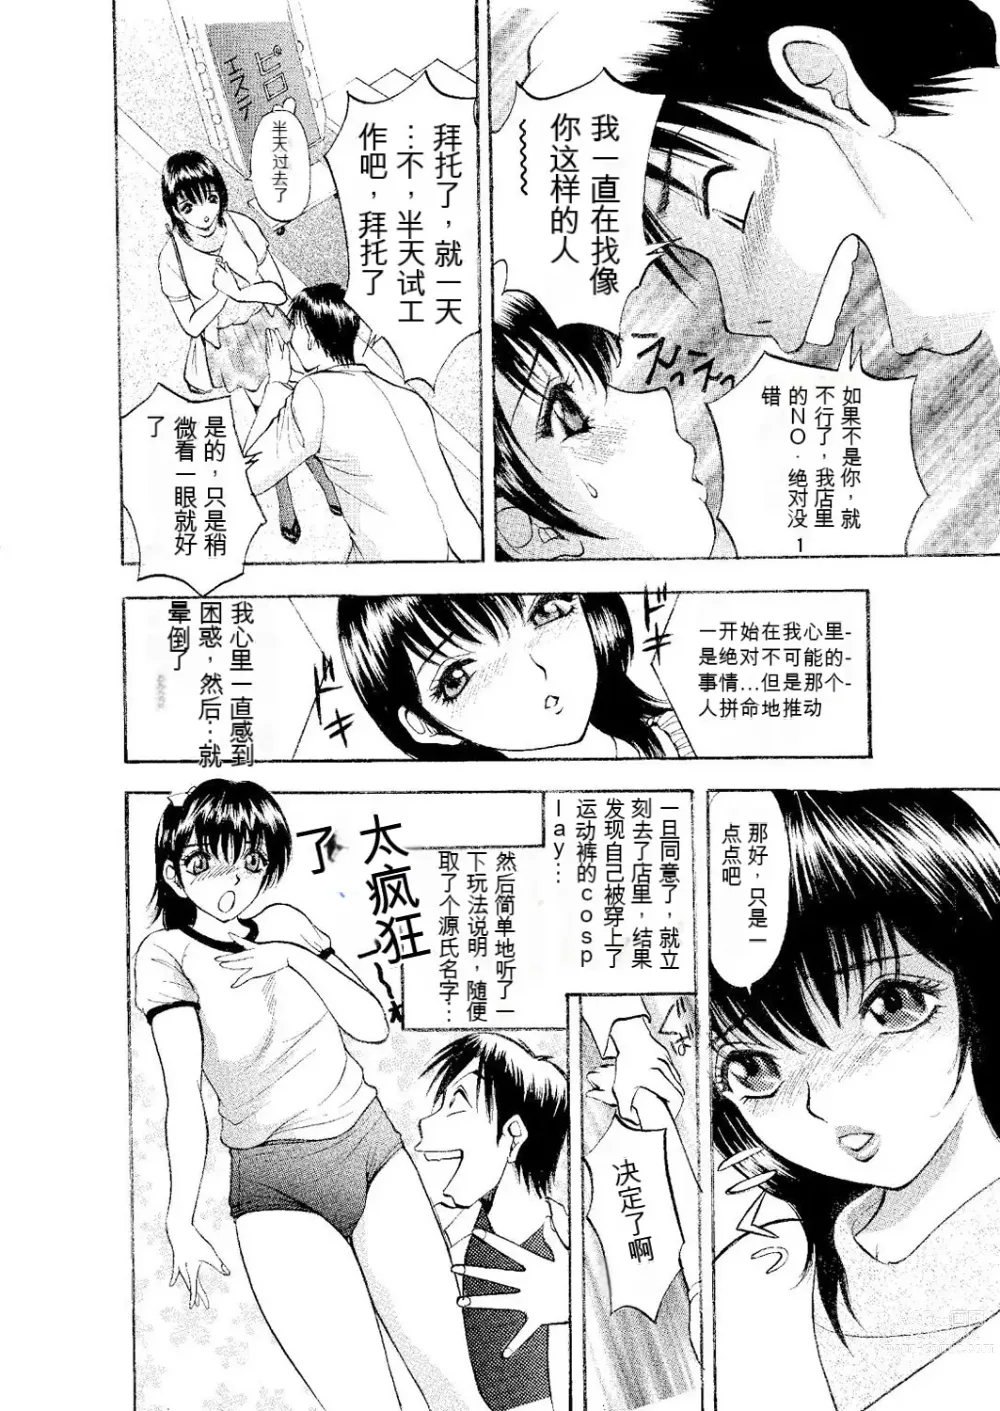 Page 25 of manga Netorare